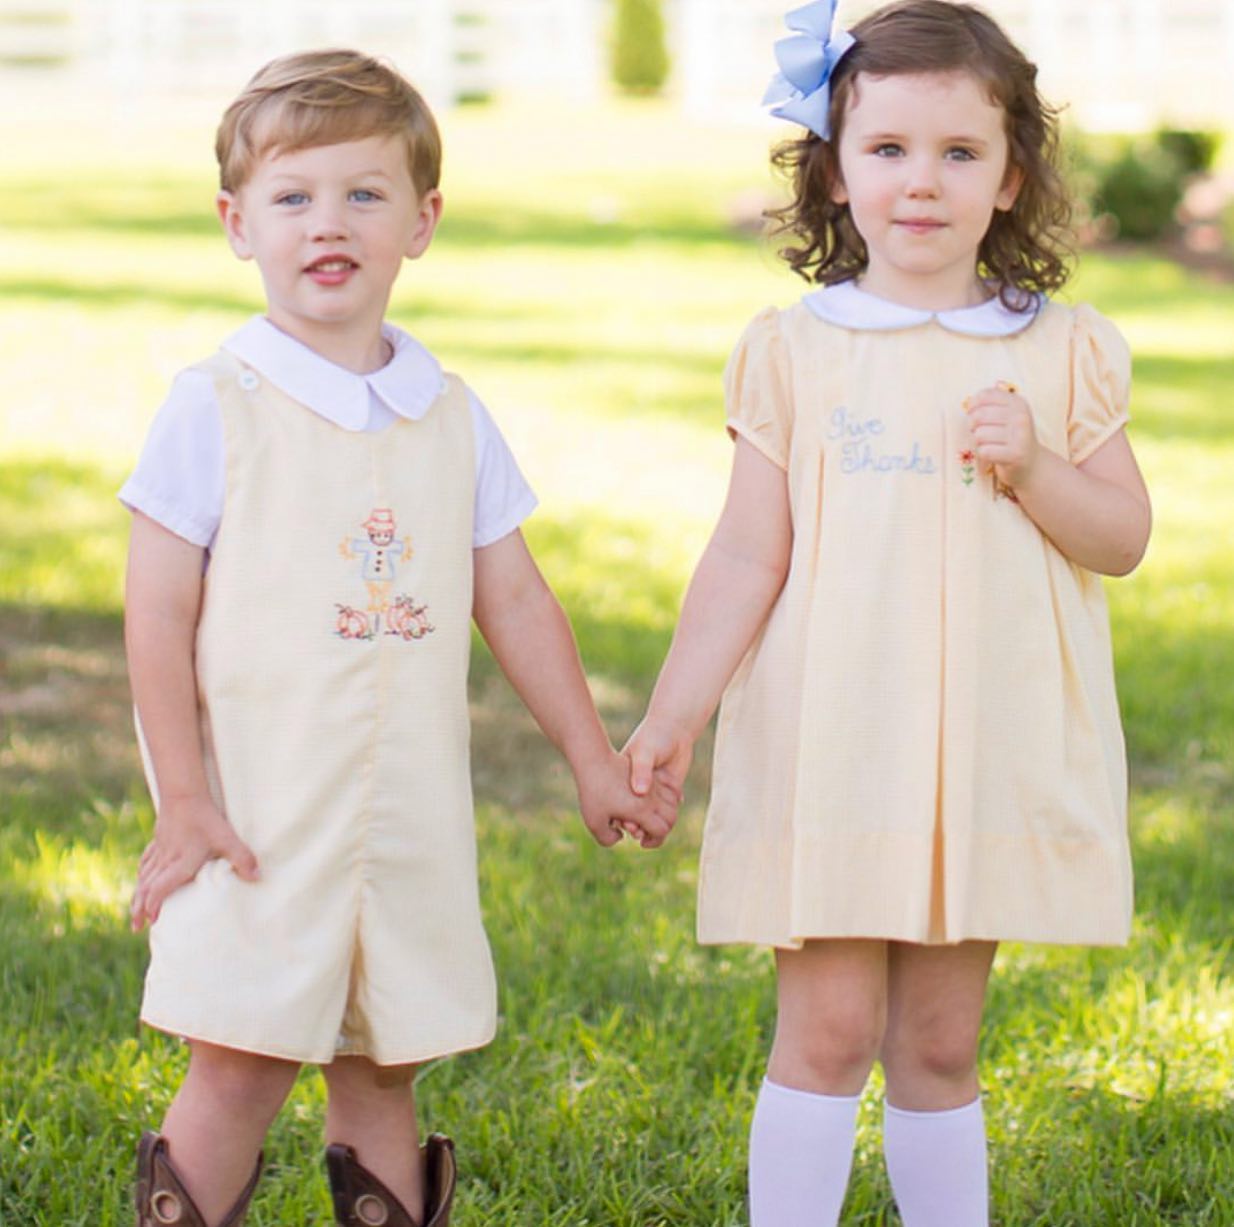 Southern Belles: A Children's Clothier